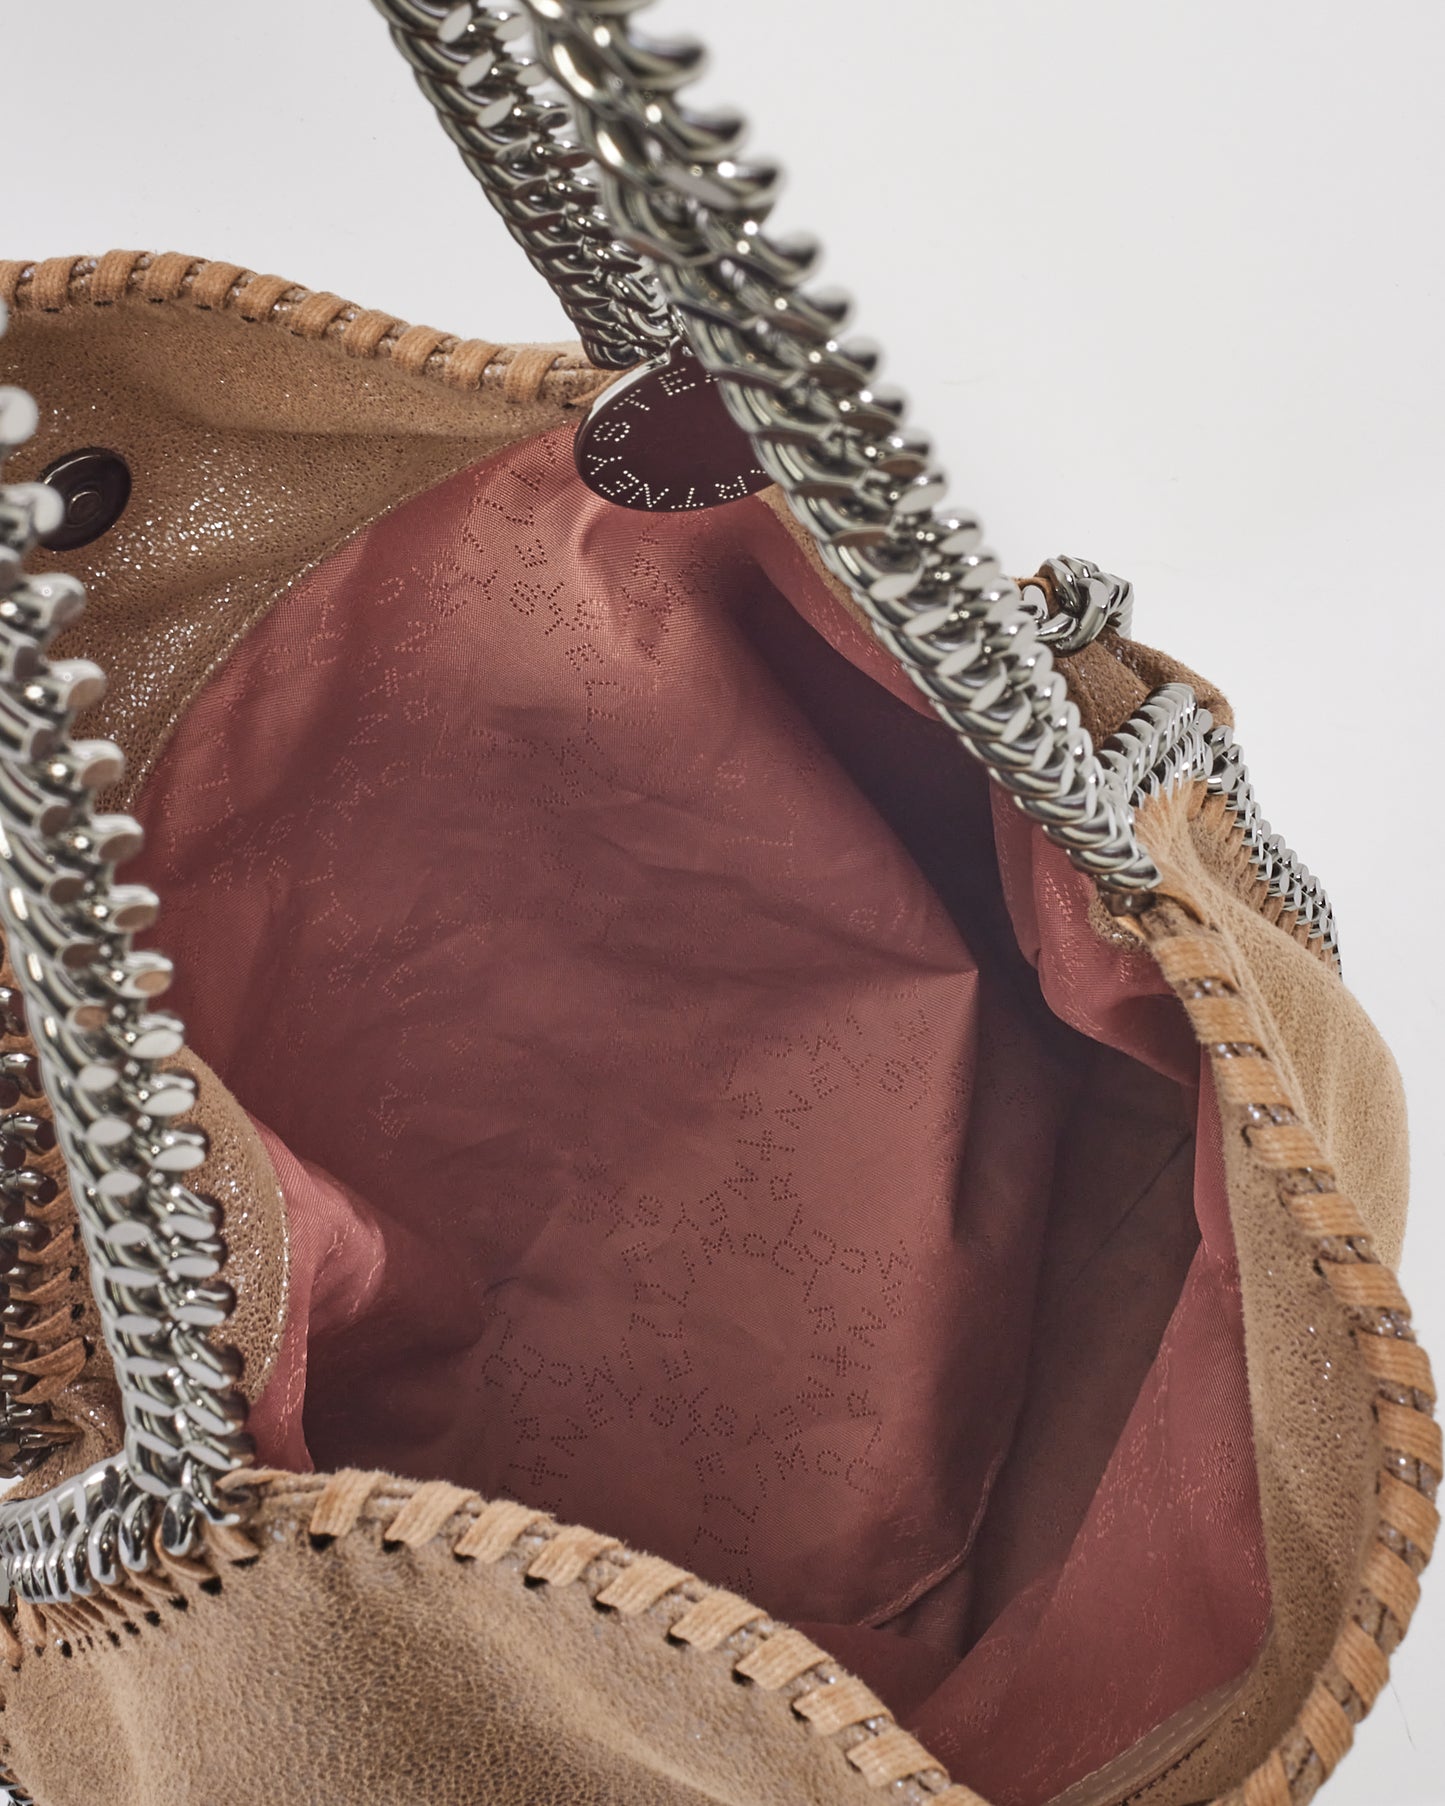 Stella McCartney Beige Vegan Leather Falabella Fold Over Shoulder Bag